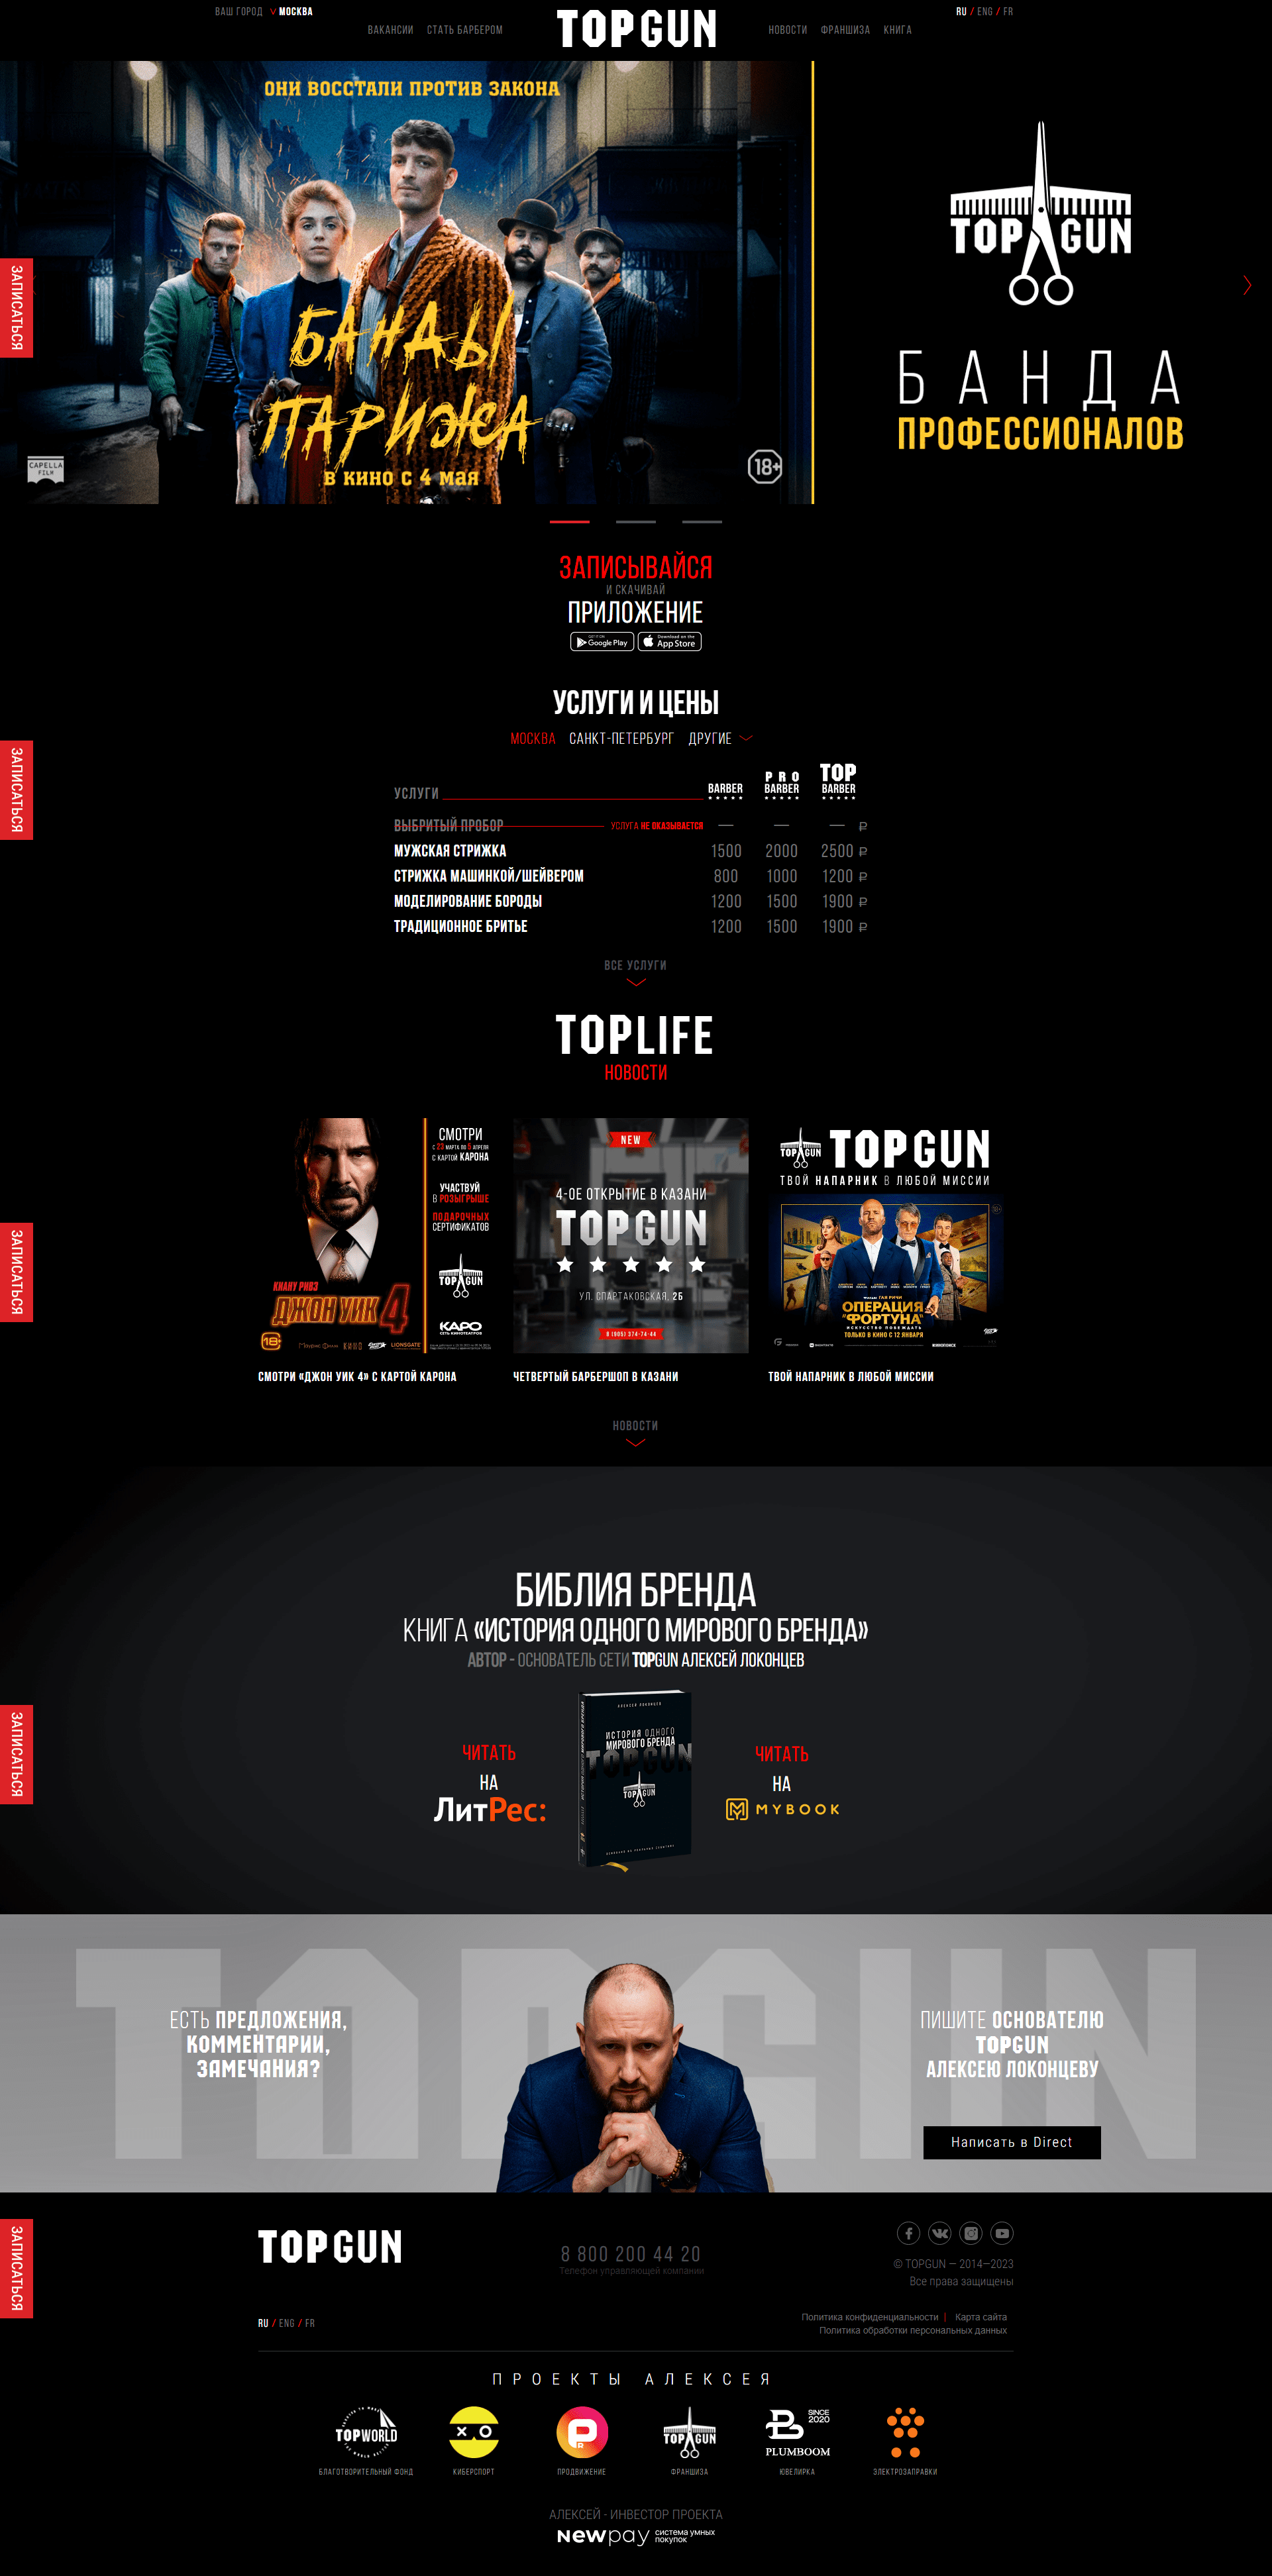 Пример topgun.ru сайта из рекламной выдачи